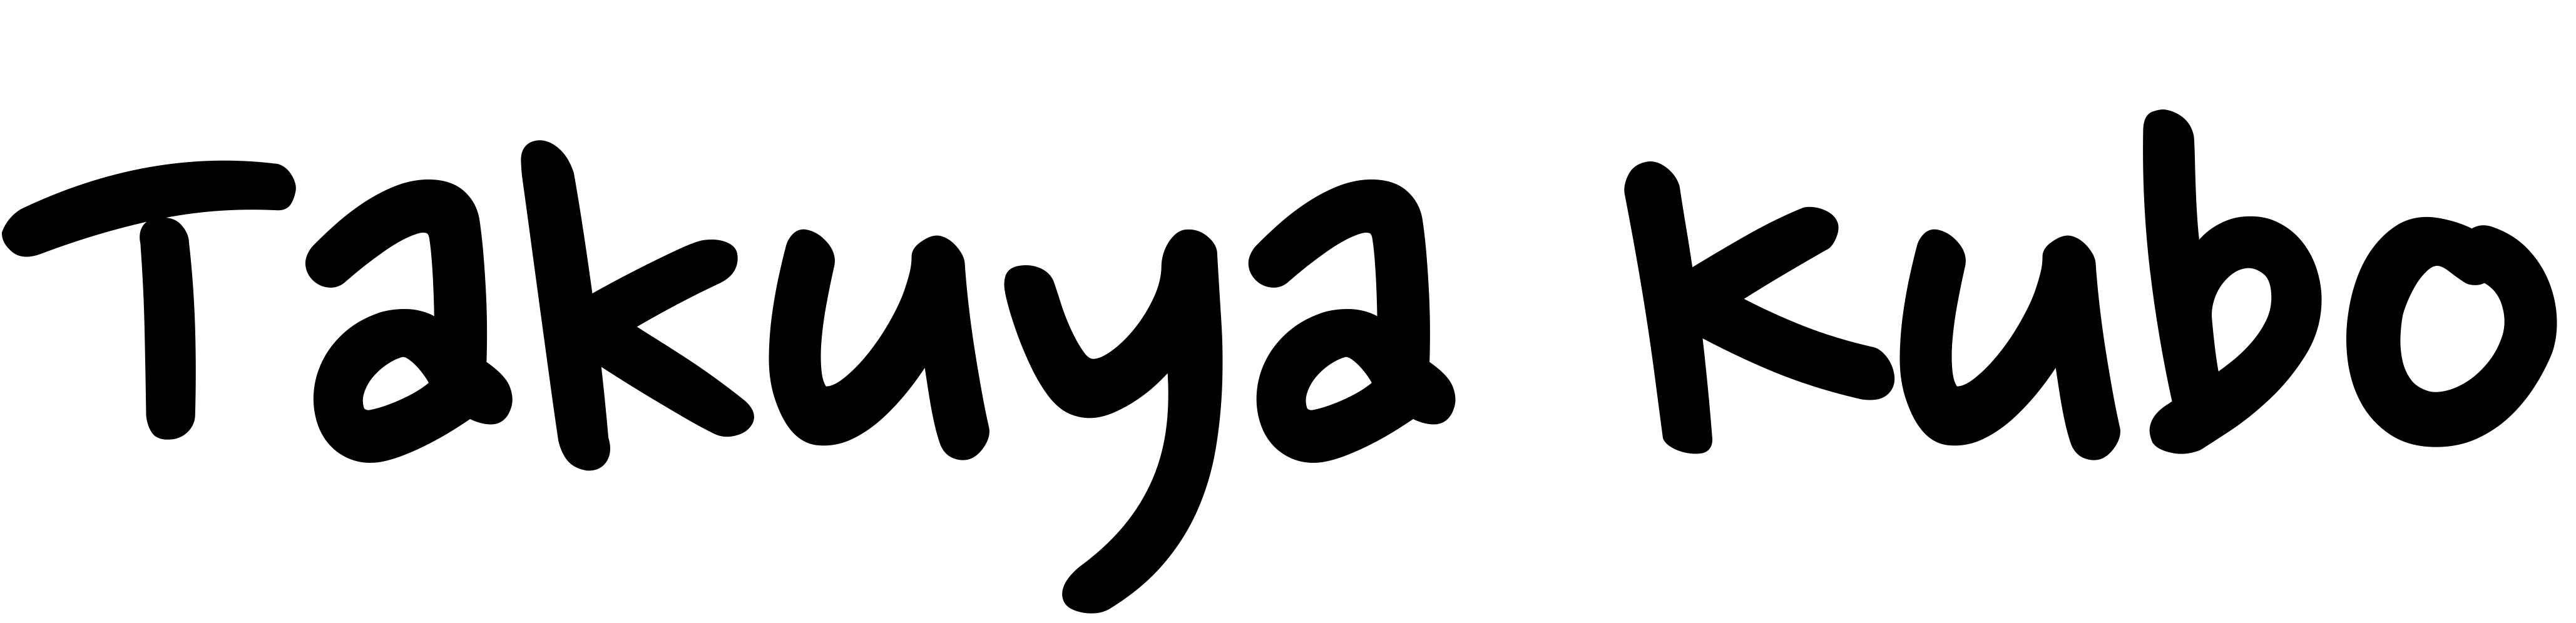 WoS論文整理アプリ logo